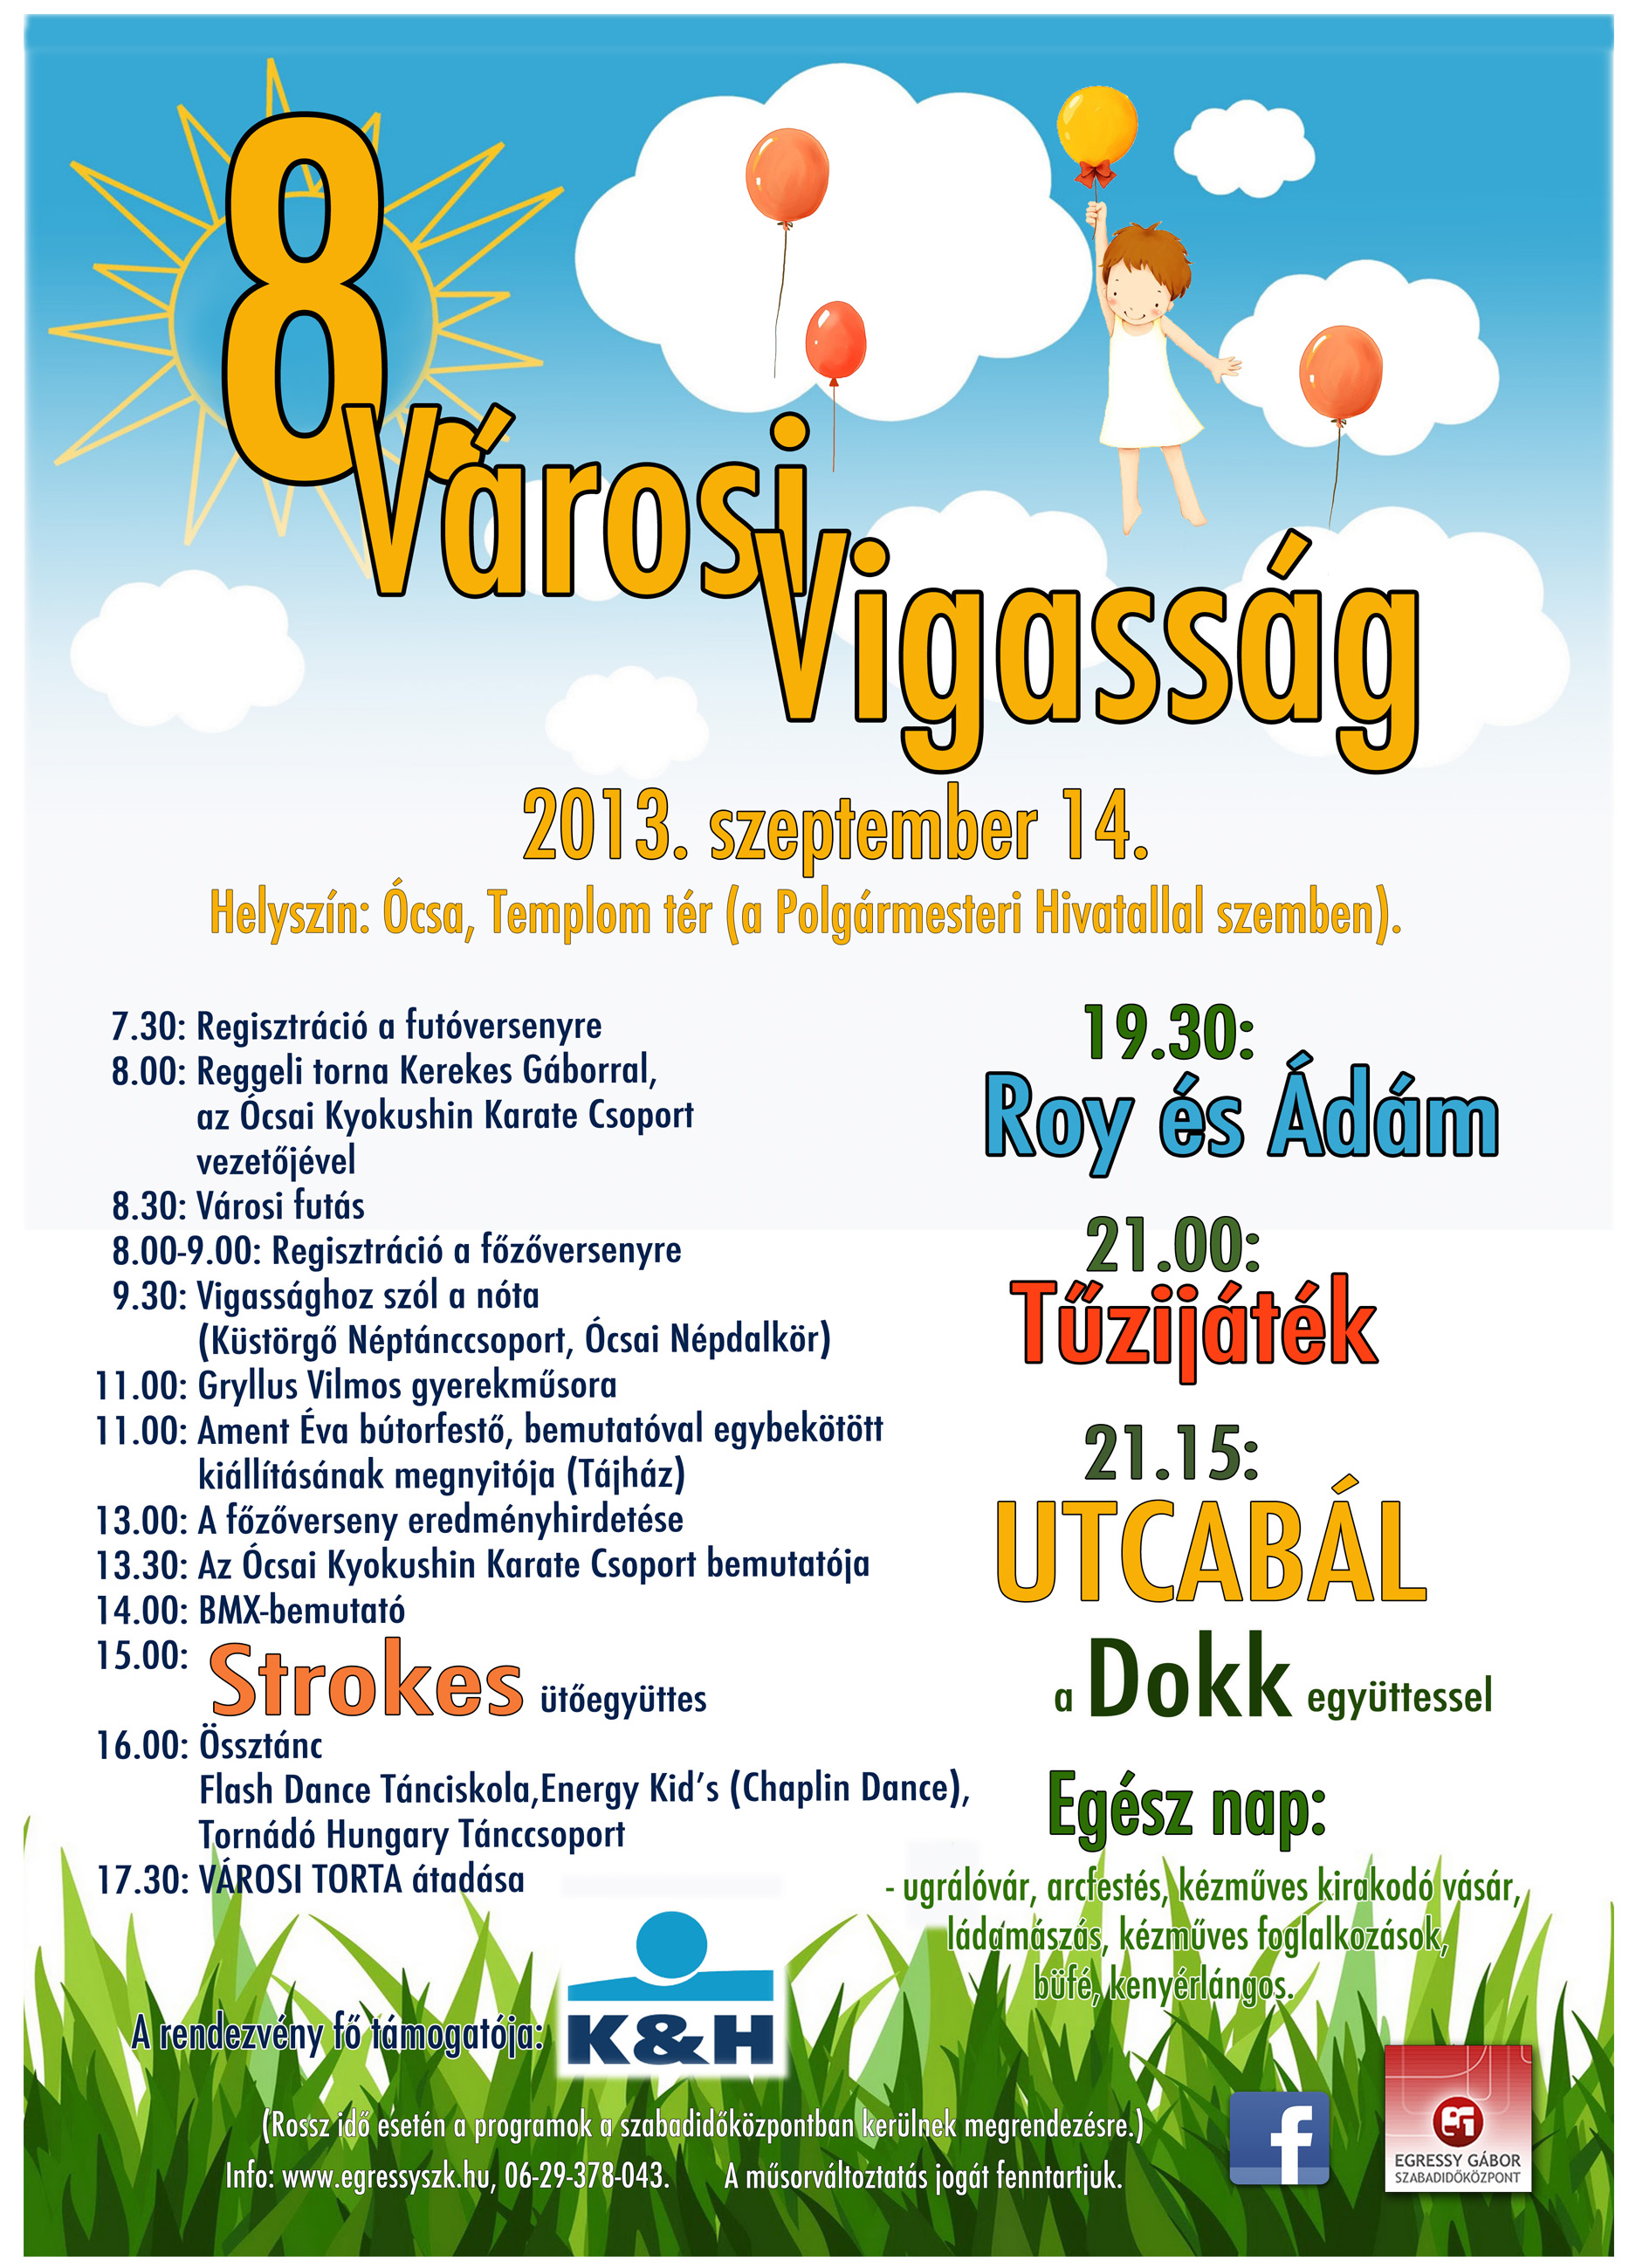 Városi Vigasság 2013 - plakát